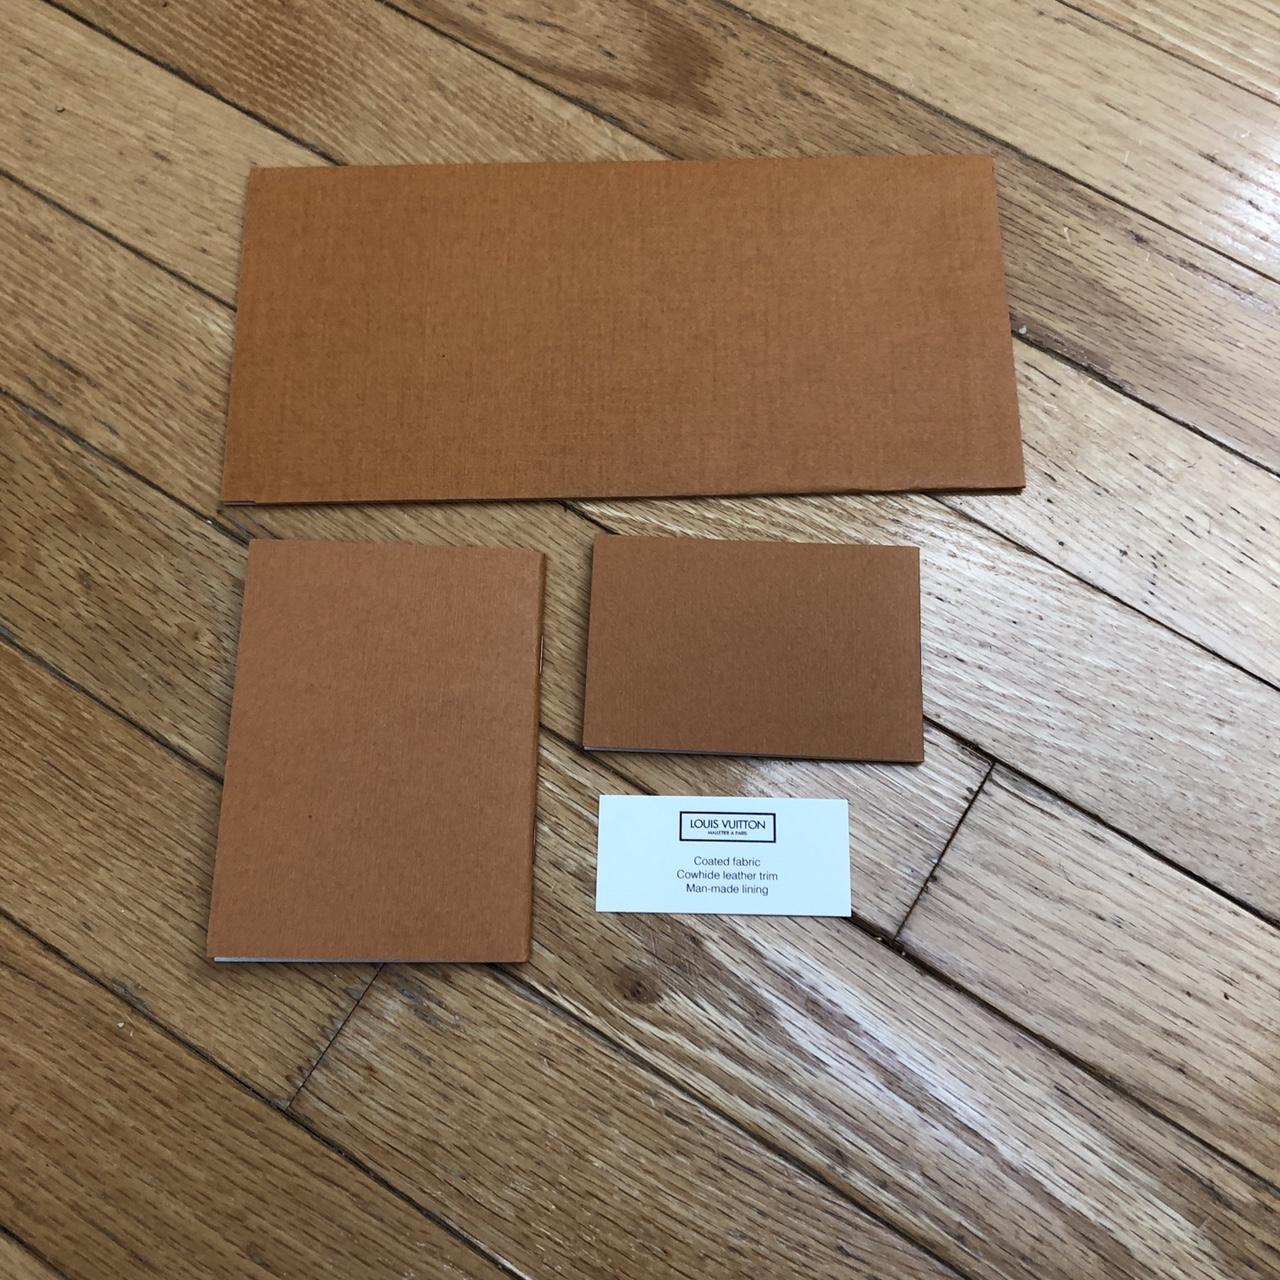 Authentic LOUIS VUITTON 6 Orange Envelopes Card Receipt Holders 4.25” x  8.75”